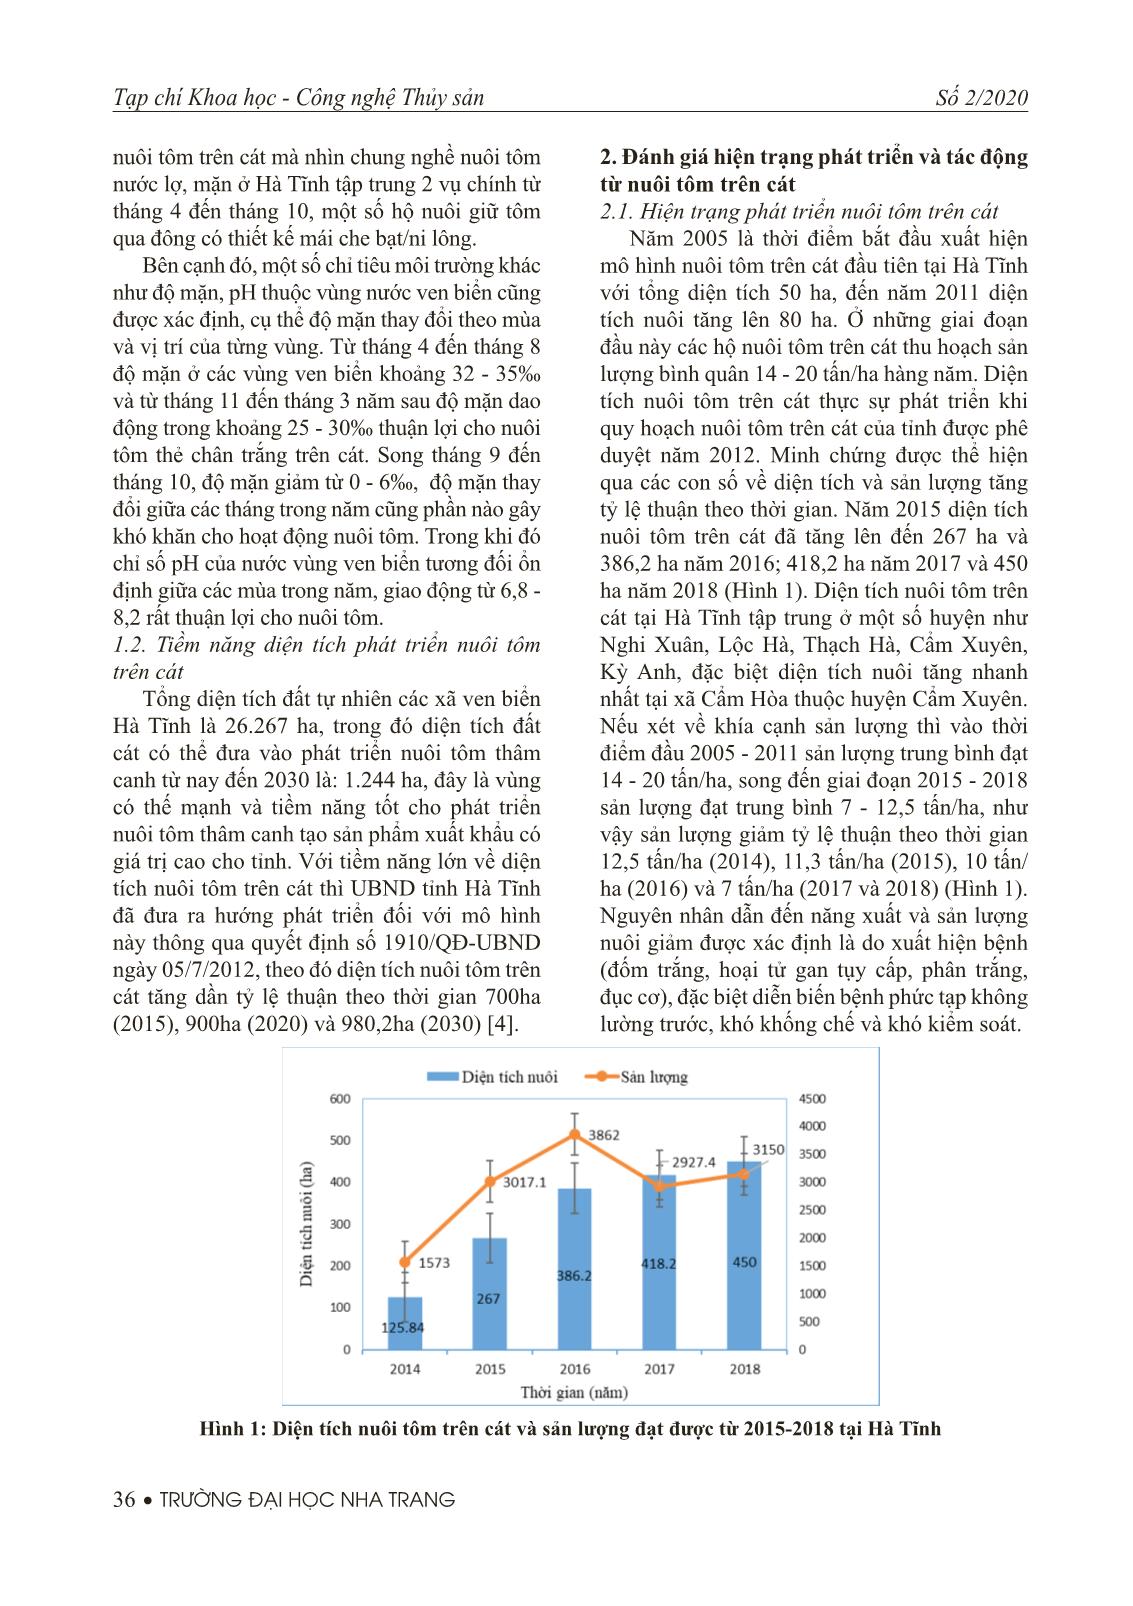 Tiềm năng, thực trạng và giải pháp phát triển nuôi tôm trên cát ở tỉnh Hà Tĩnh trang 3